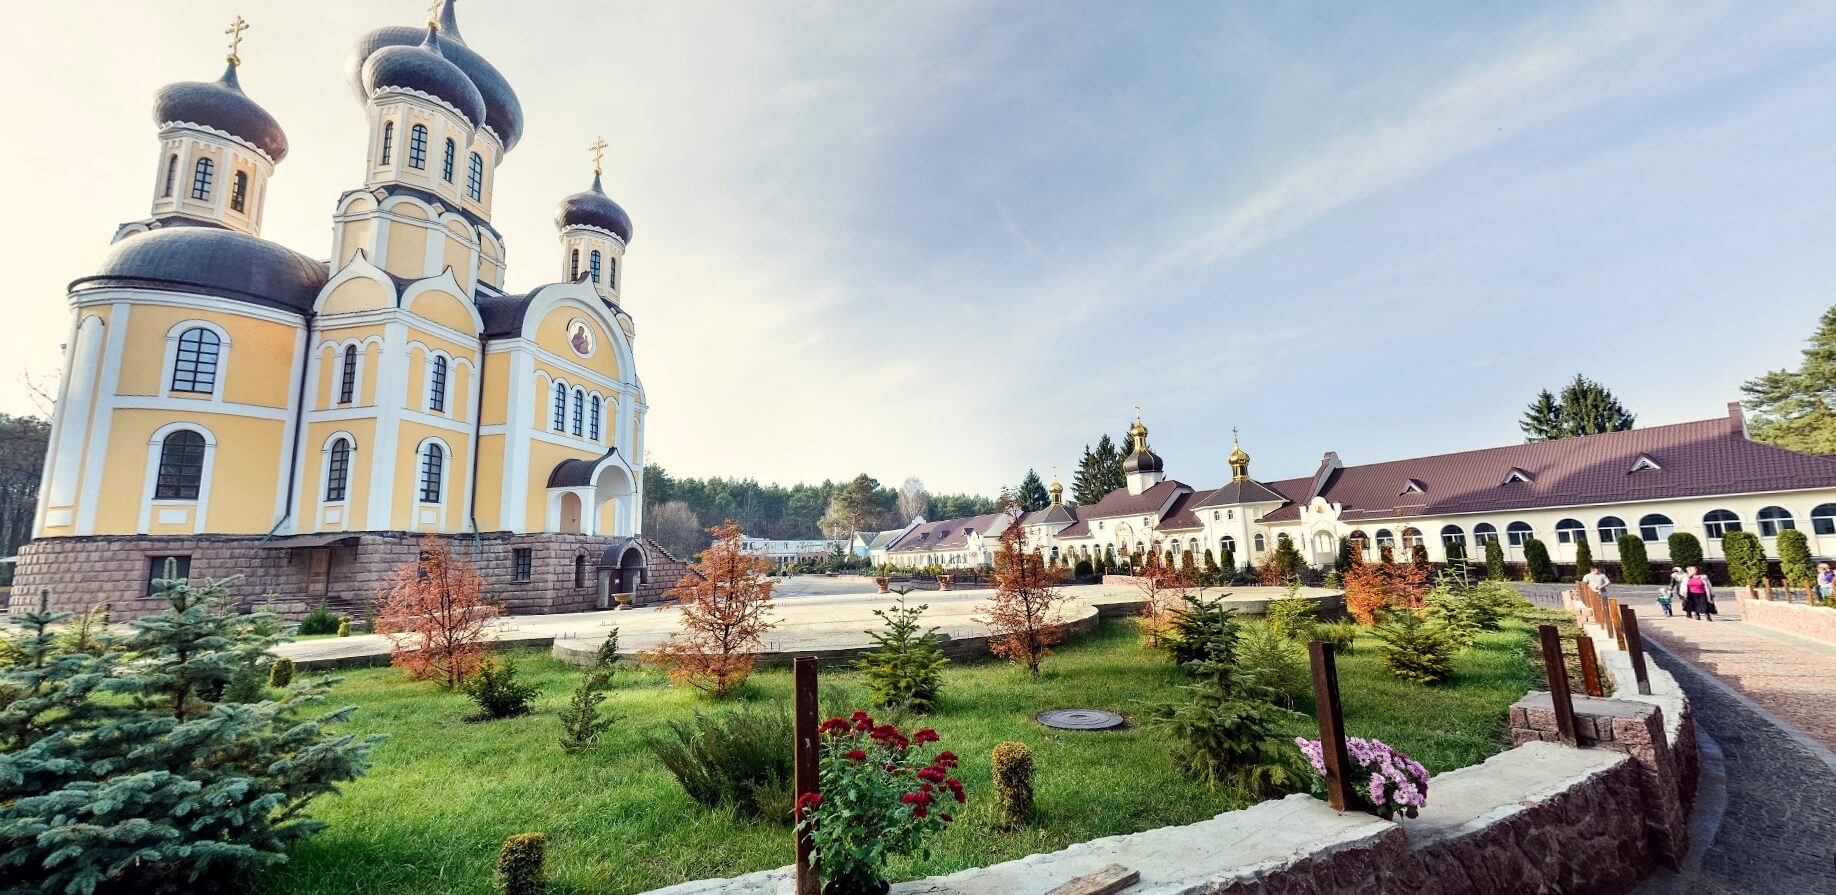 Свято-Анастасиевский монастырь (Житомир)